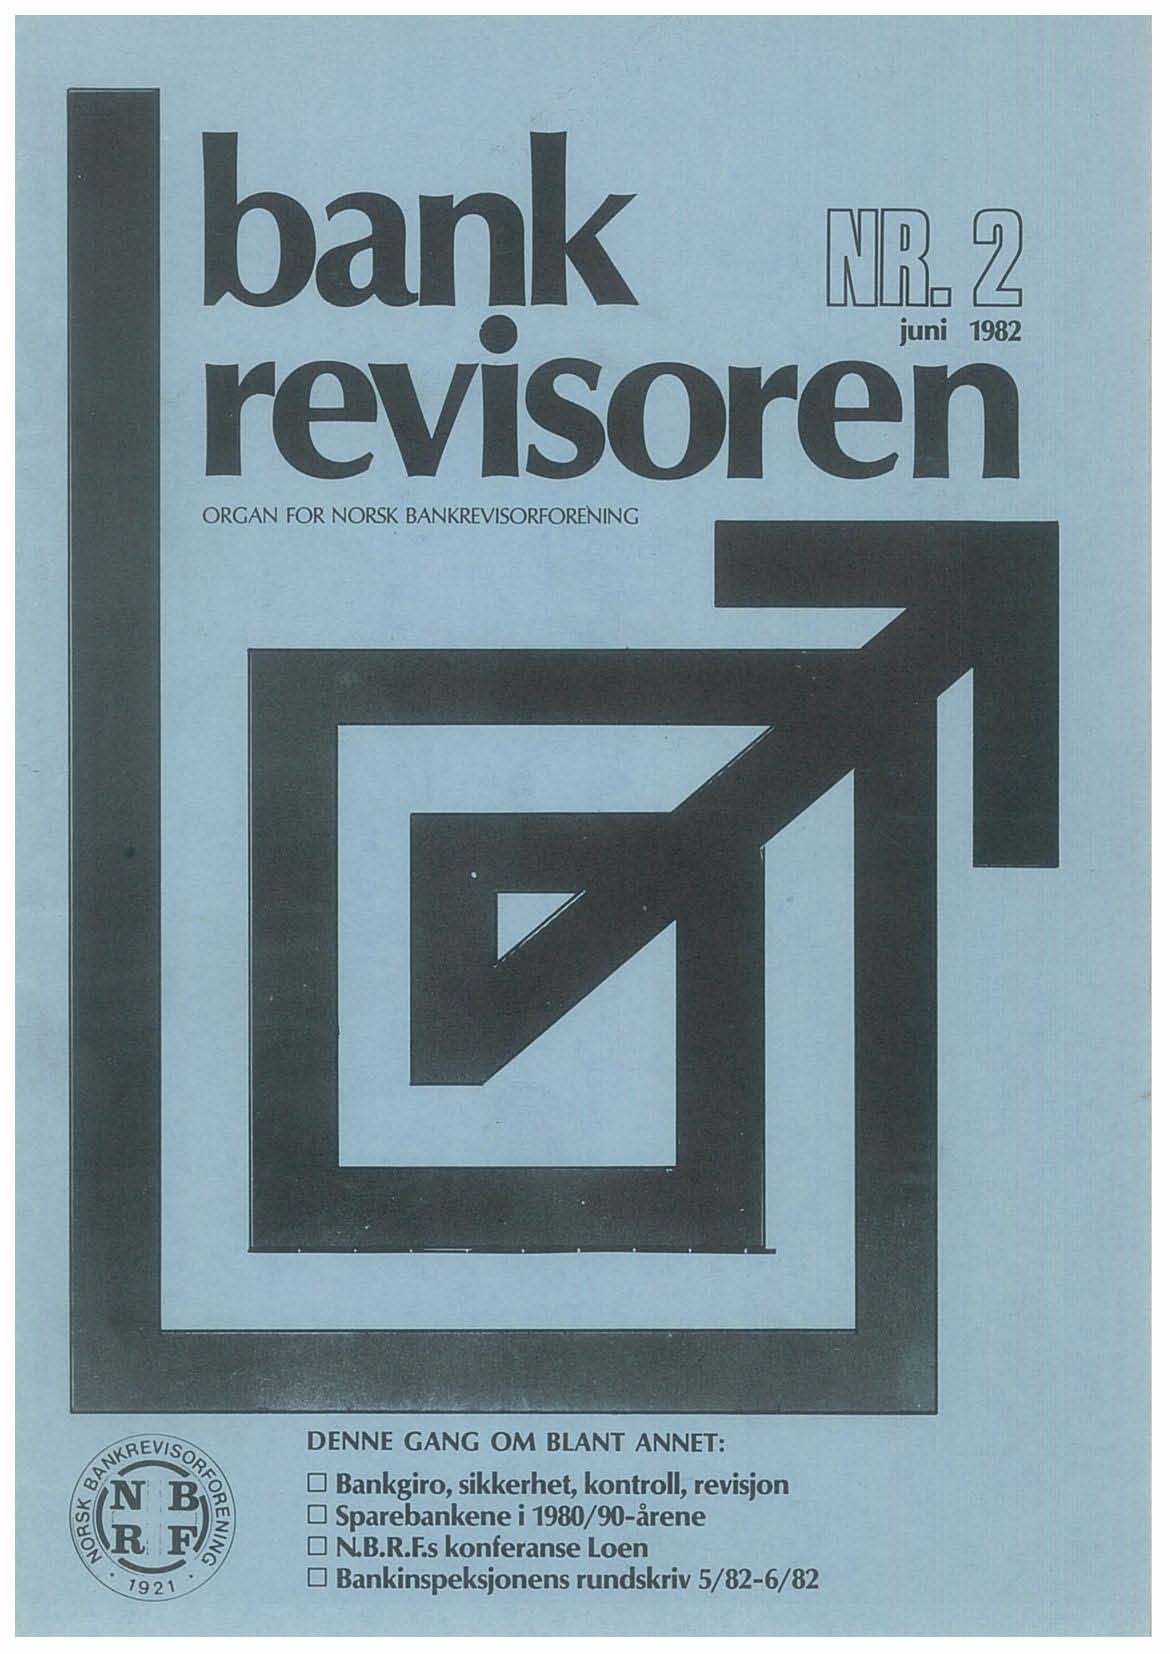 [(]WD ~ juni 1982 revlsoren ORGAN FOR NORSK BANKREVISORFORENING DENNE GANG OM BLANT ANNET: o Bankgiro, sikkerhet,